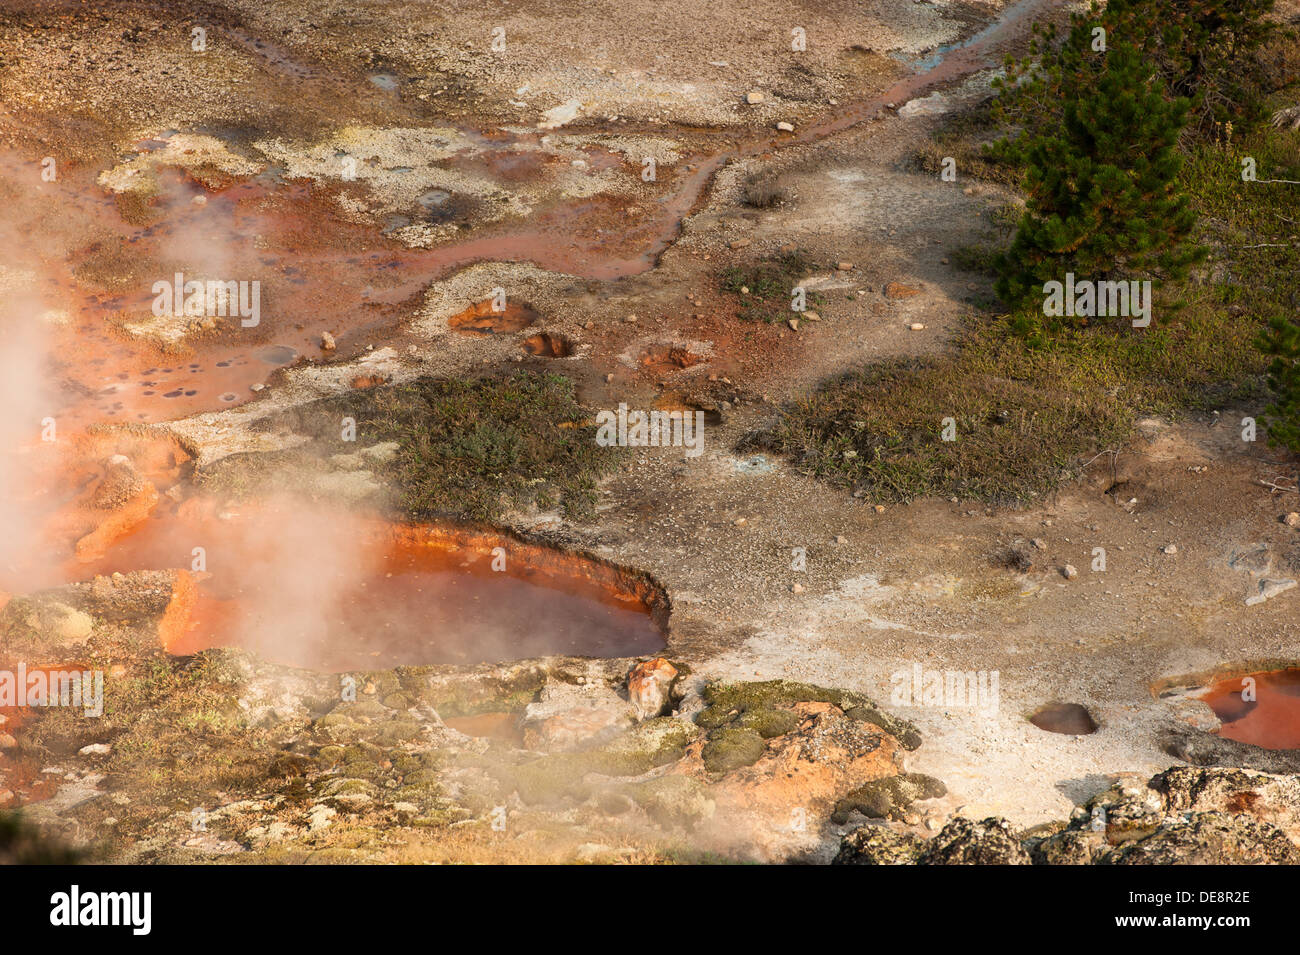 Foto des Bereichs Künstler Farbtöpfe fand im Yellowstone-Nationalpark, Wyoming. Stockfoto